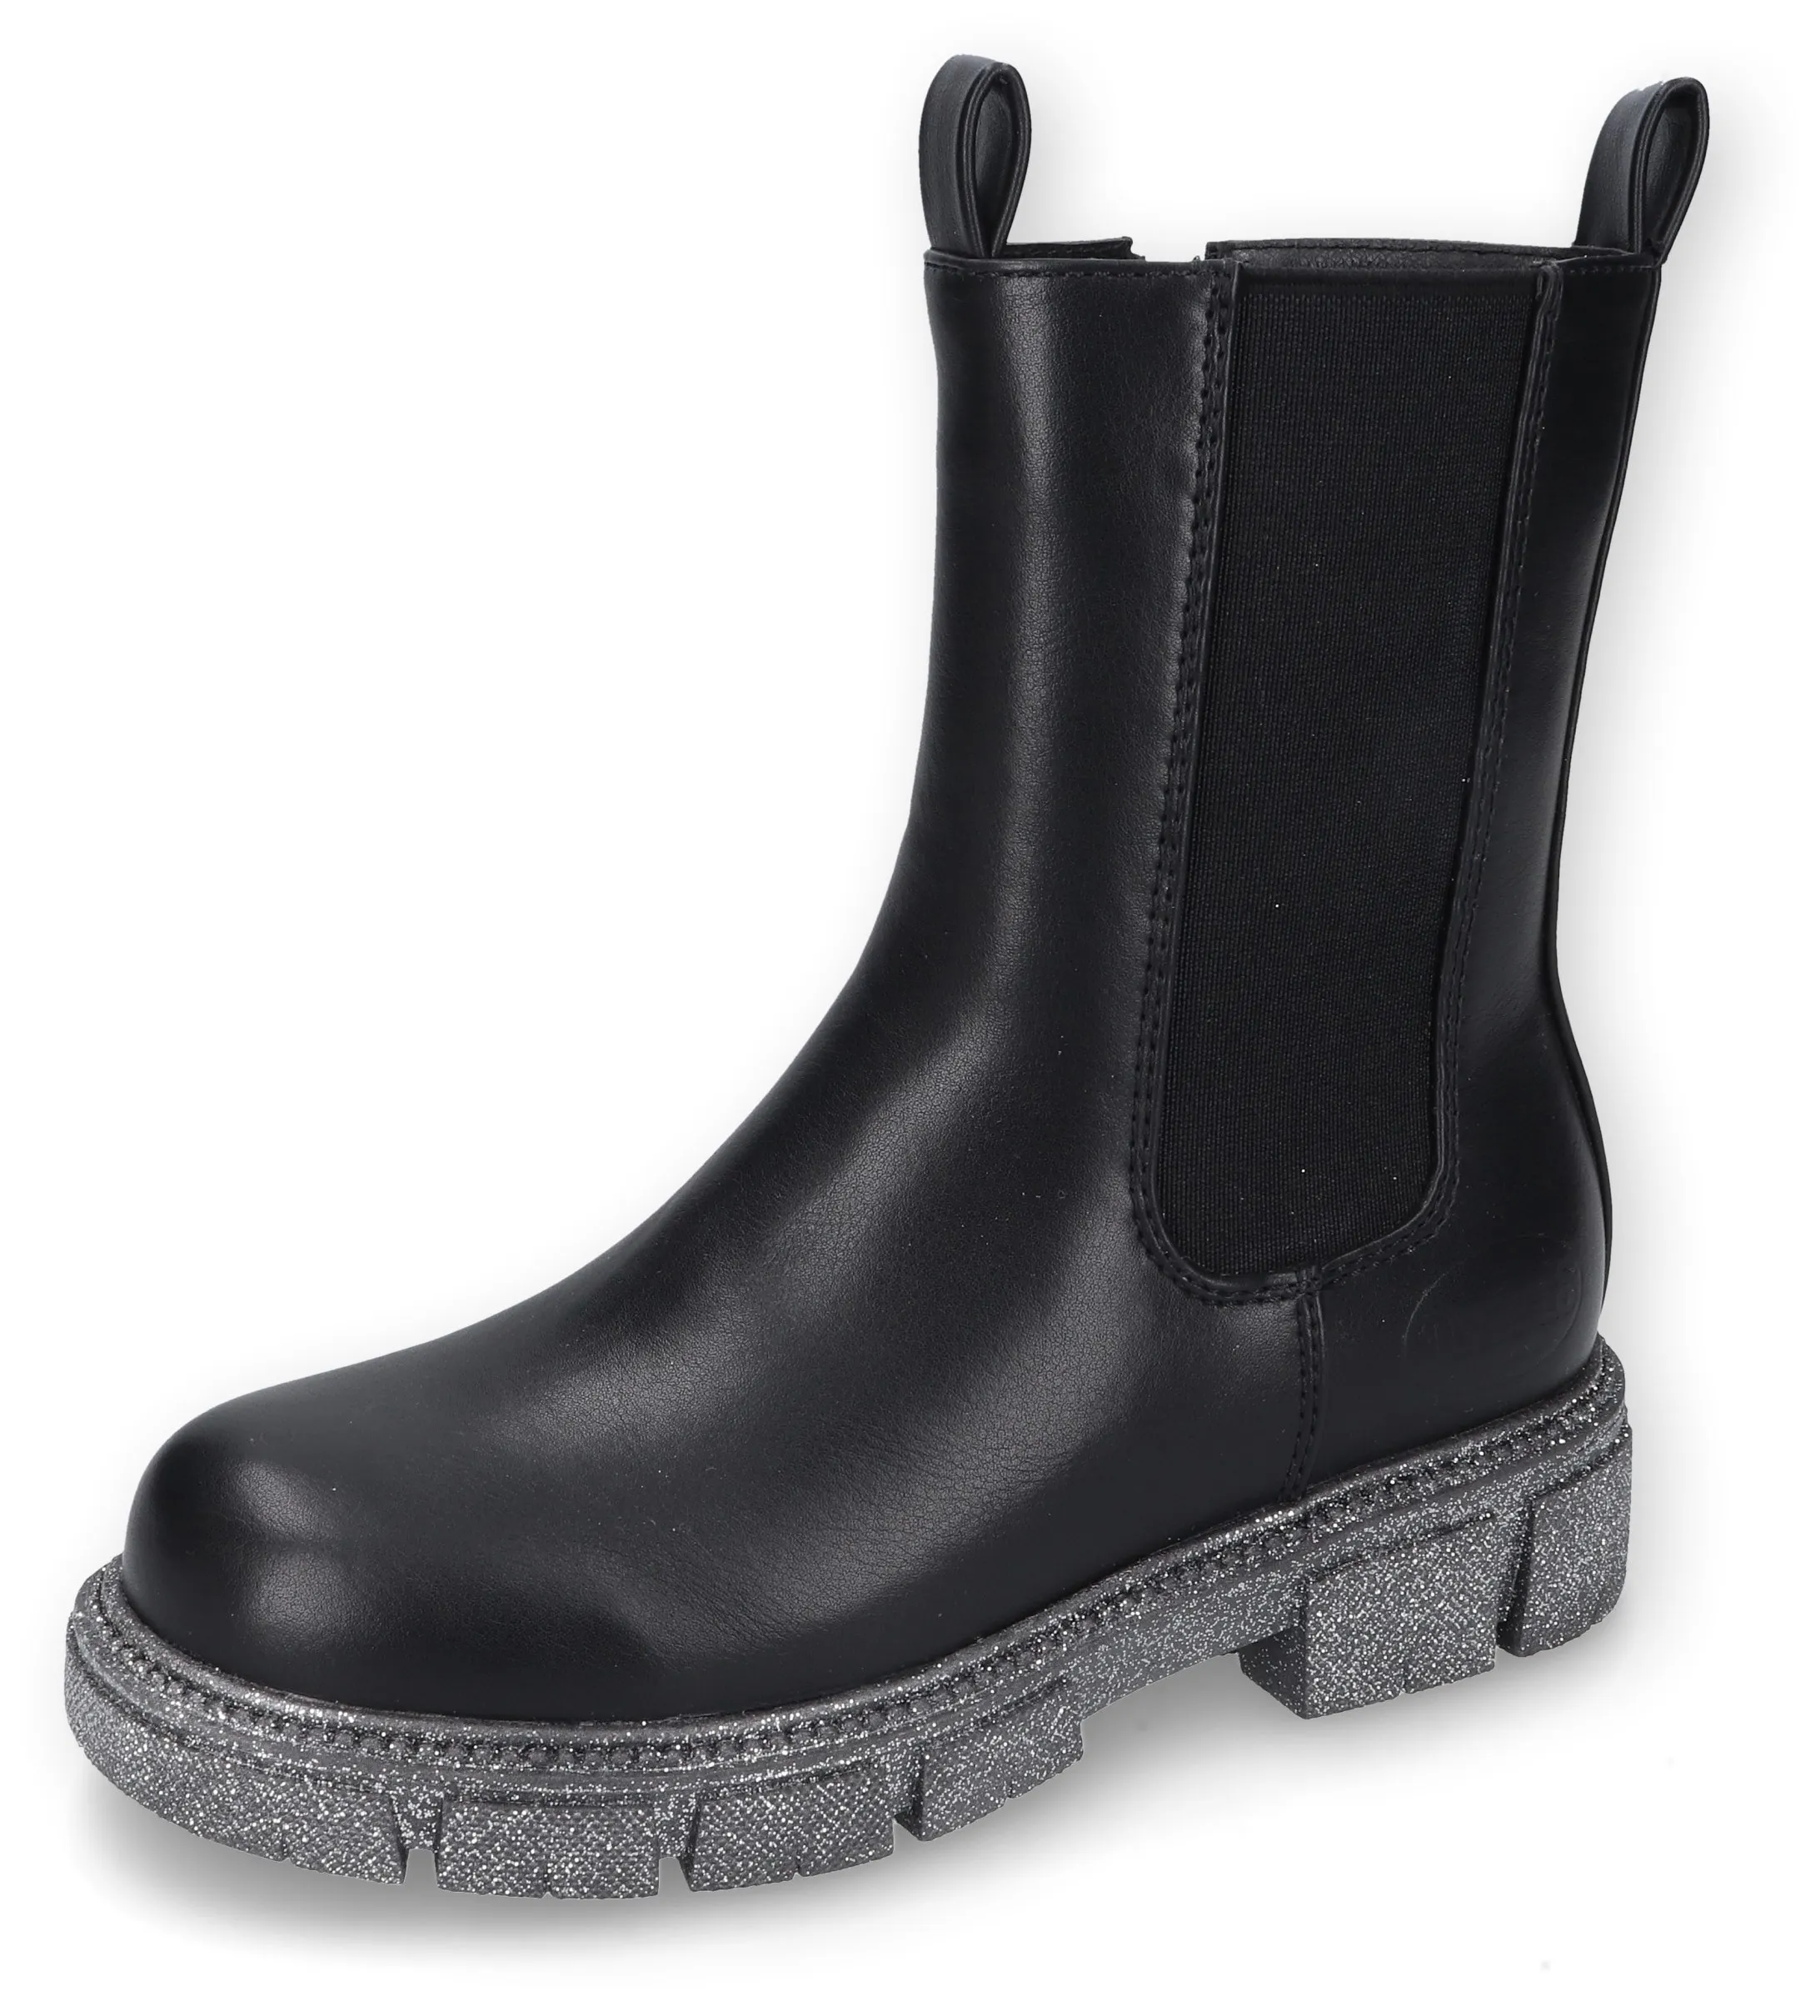 Stiefel DOCKERS BY GERLI Gr. 35, schwarz Kinder Schuhe Stiefel Boots mit cooler Laufsohle